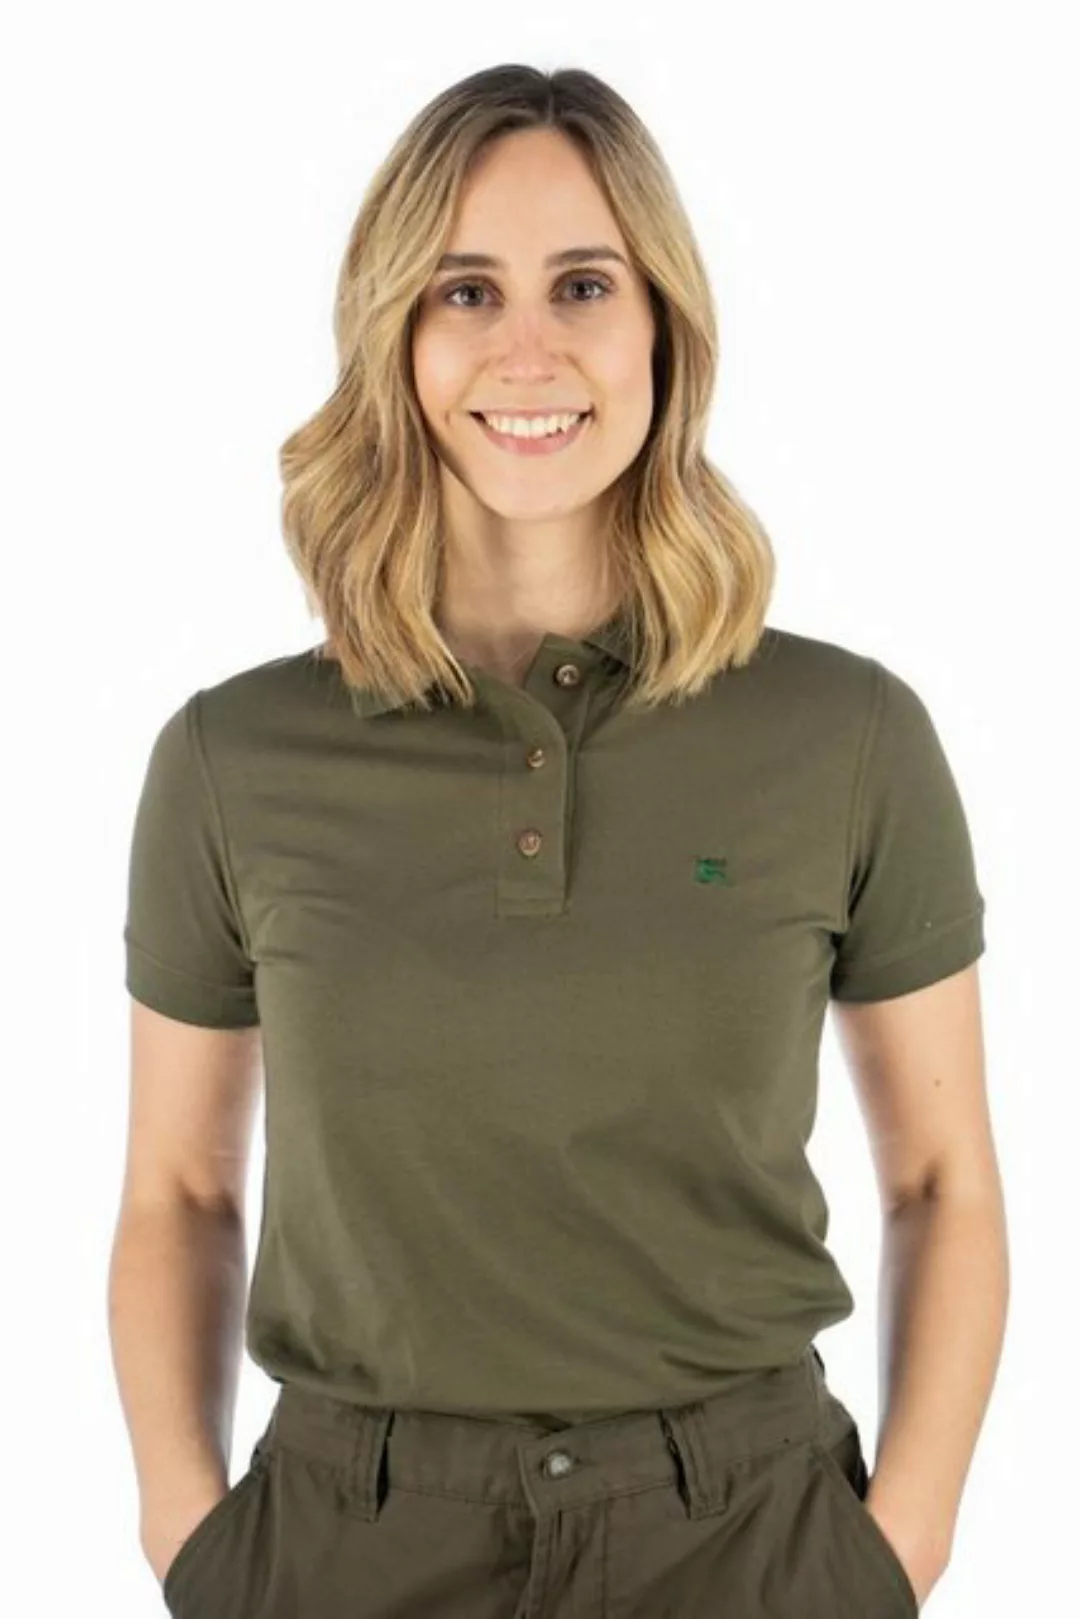 OS-Trachten Poloshirt Laukas Kurzarm Shirt mit Hirsch-Stickerei auf der lin günstig online kaufen